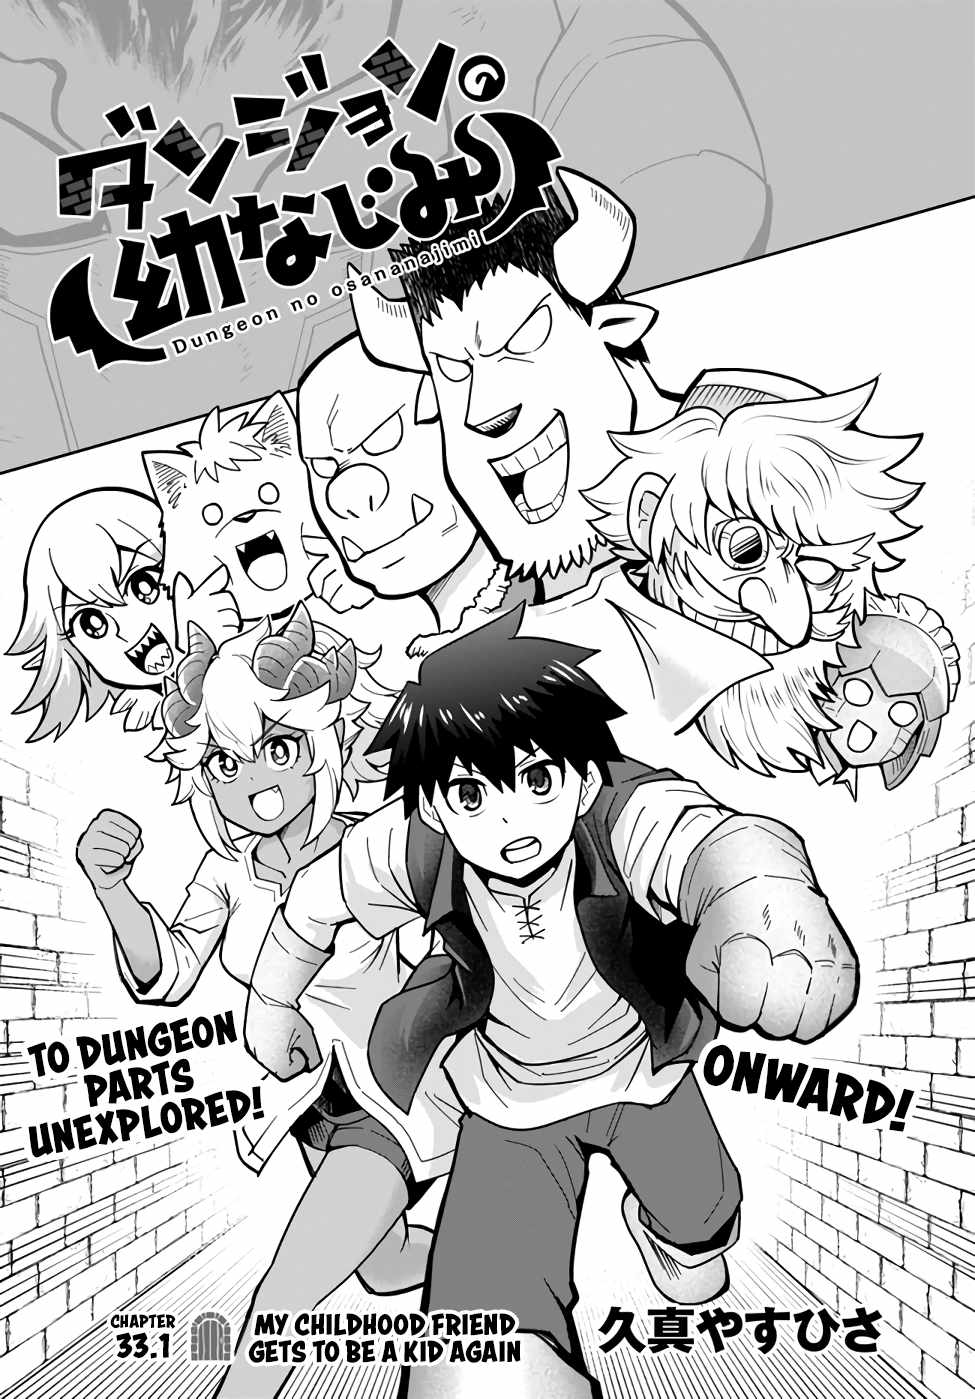 read Dungeon no Osananajimi Chapter 33-1 Manga Online Free at Mangabuddy, MangaNato,Manhwatop | MangaSo.com